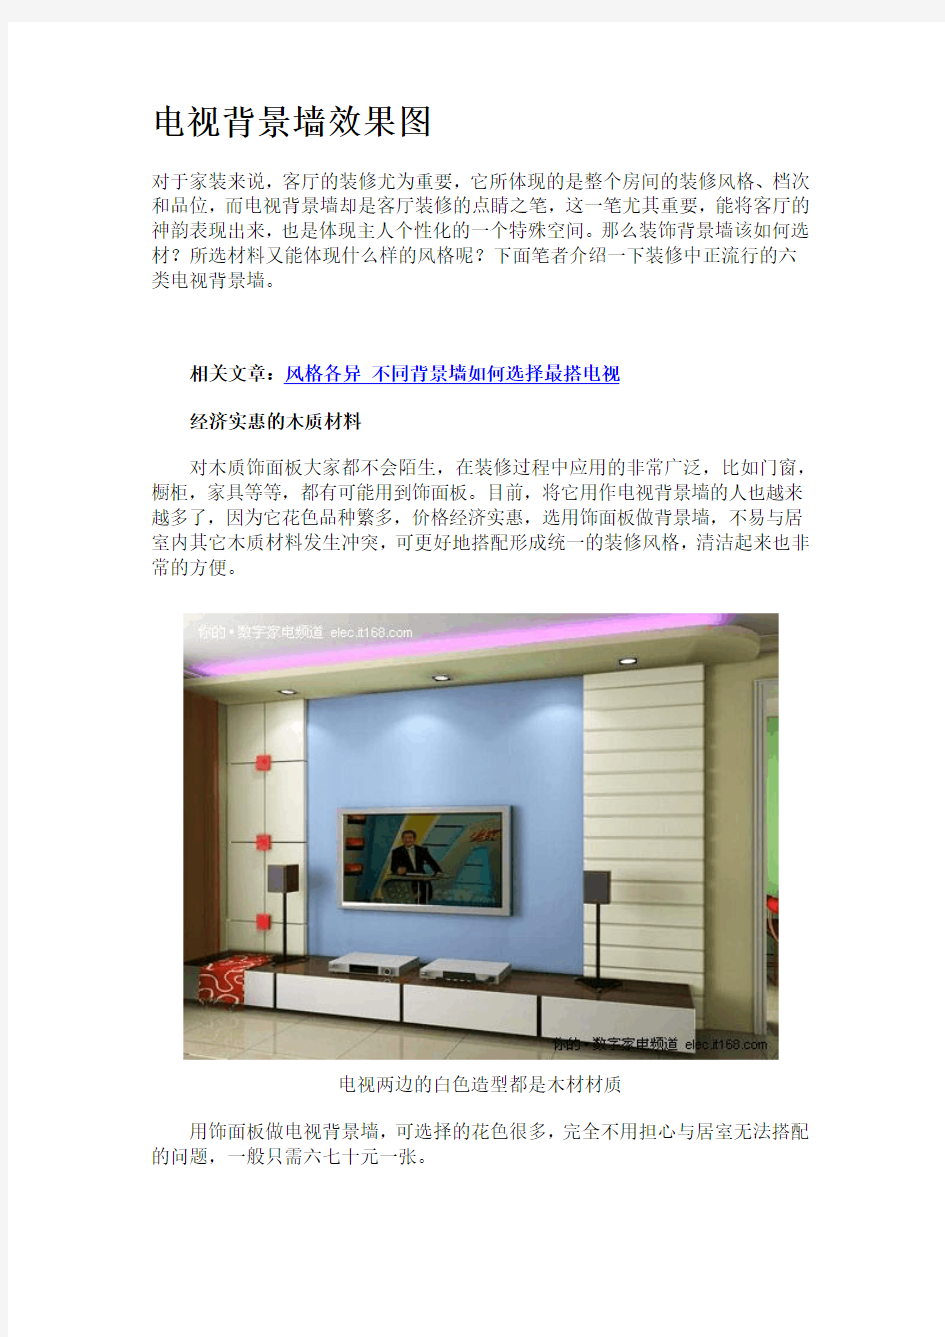 室内设计--电视背景墙效果图qyb